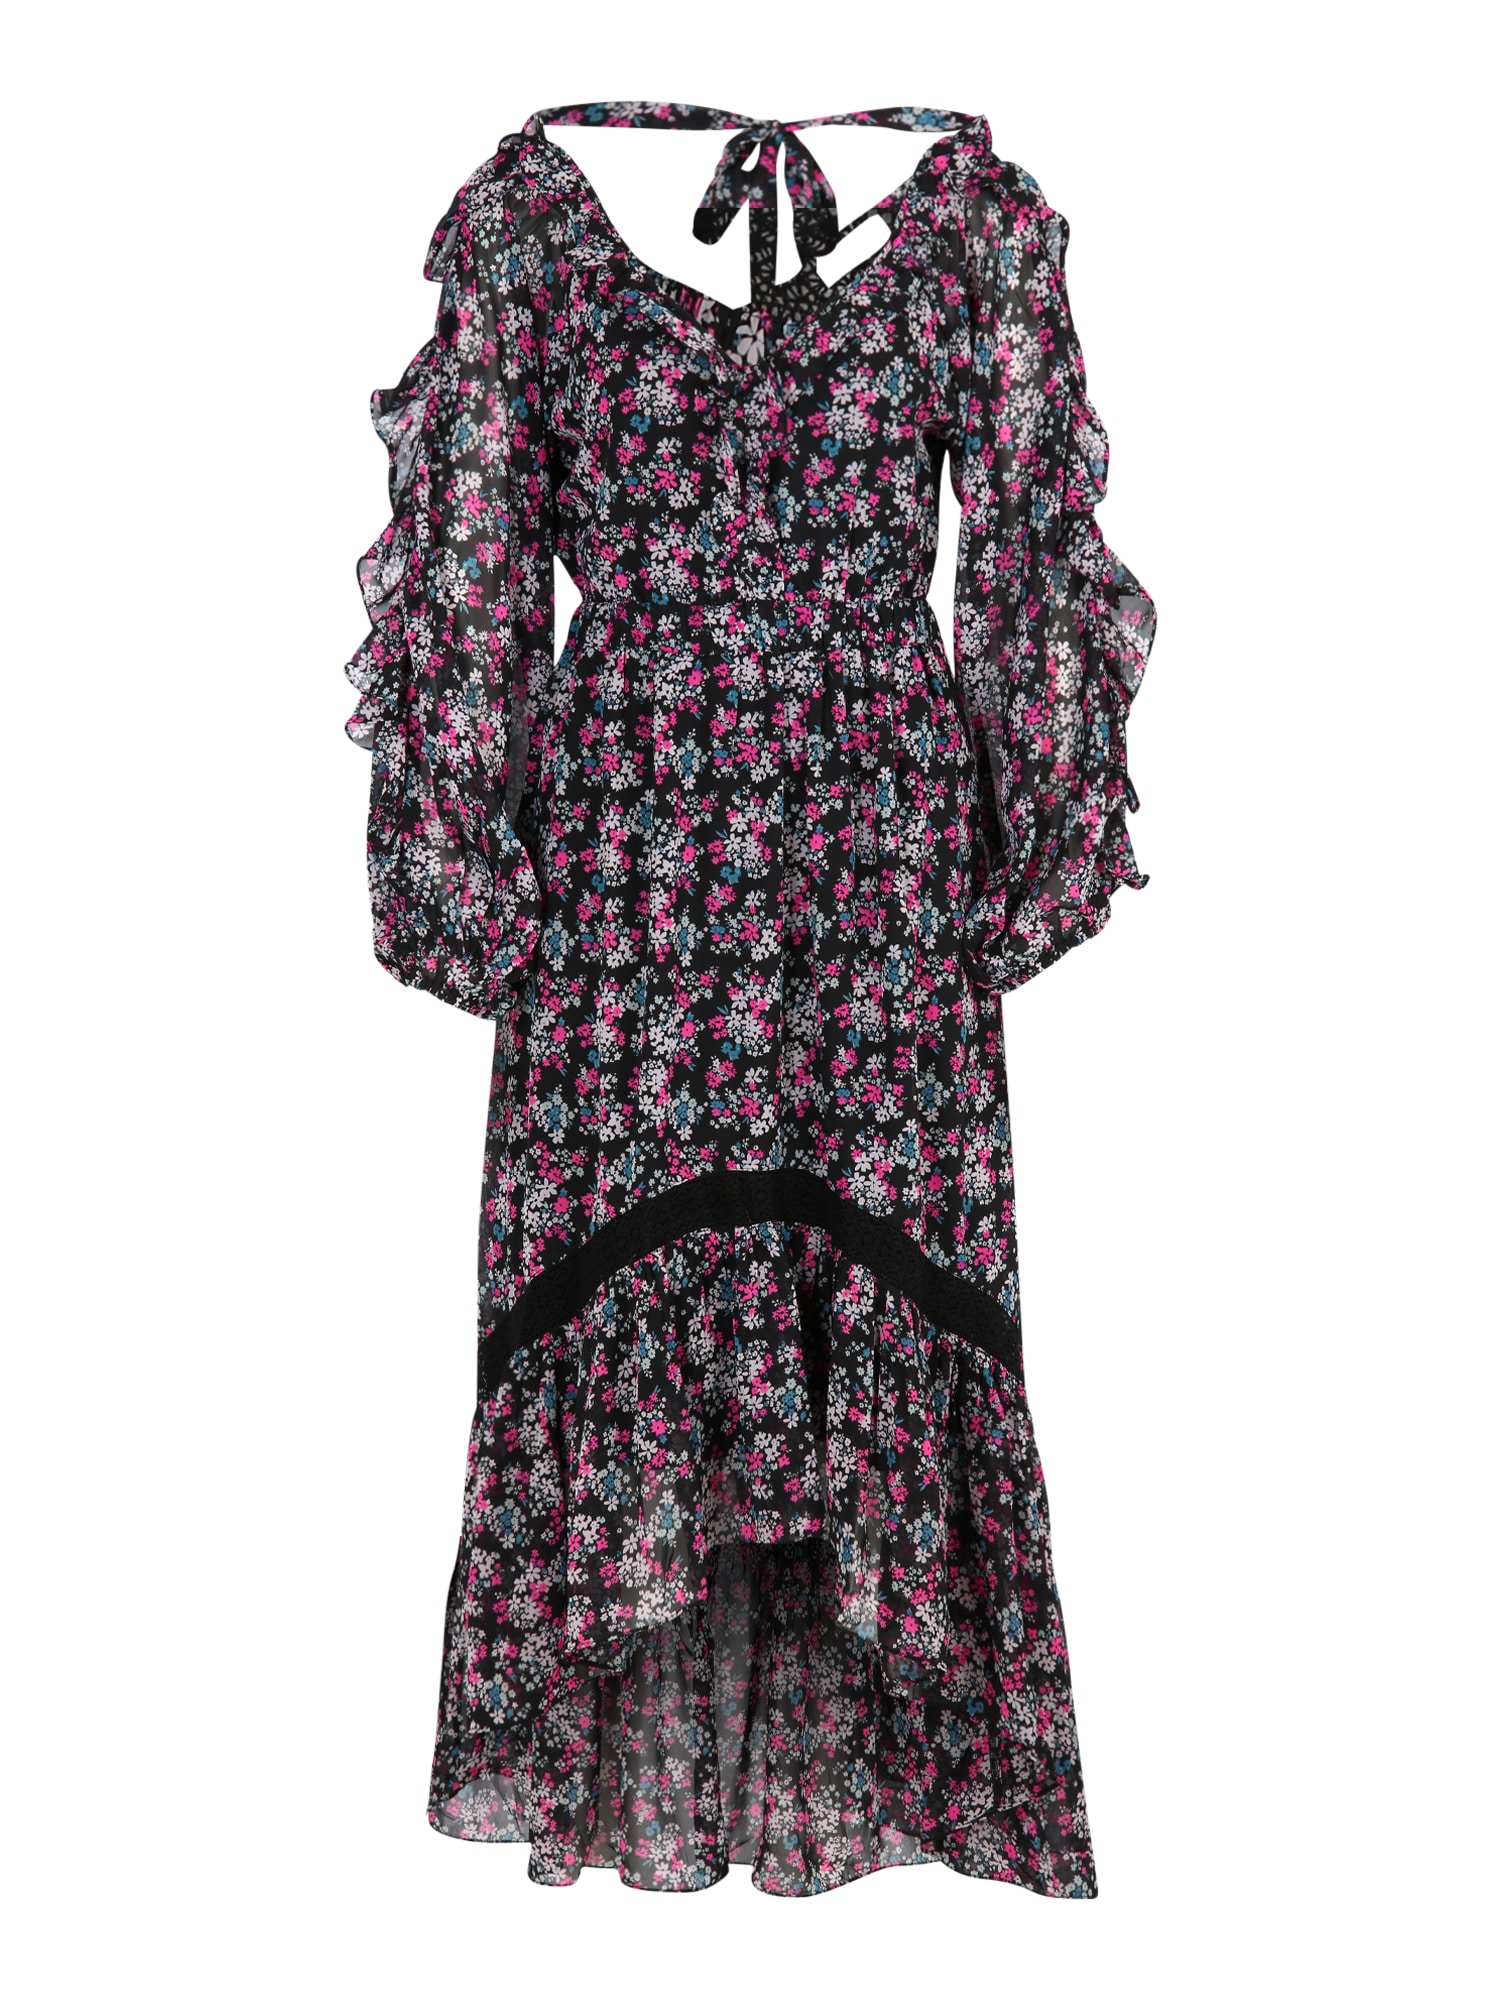 Wallis Petite Suknelė juoda / rožinė / balta / benzino spalva